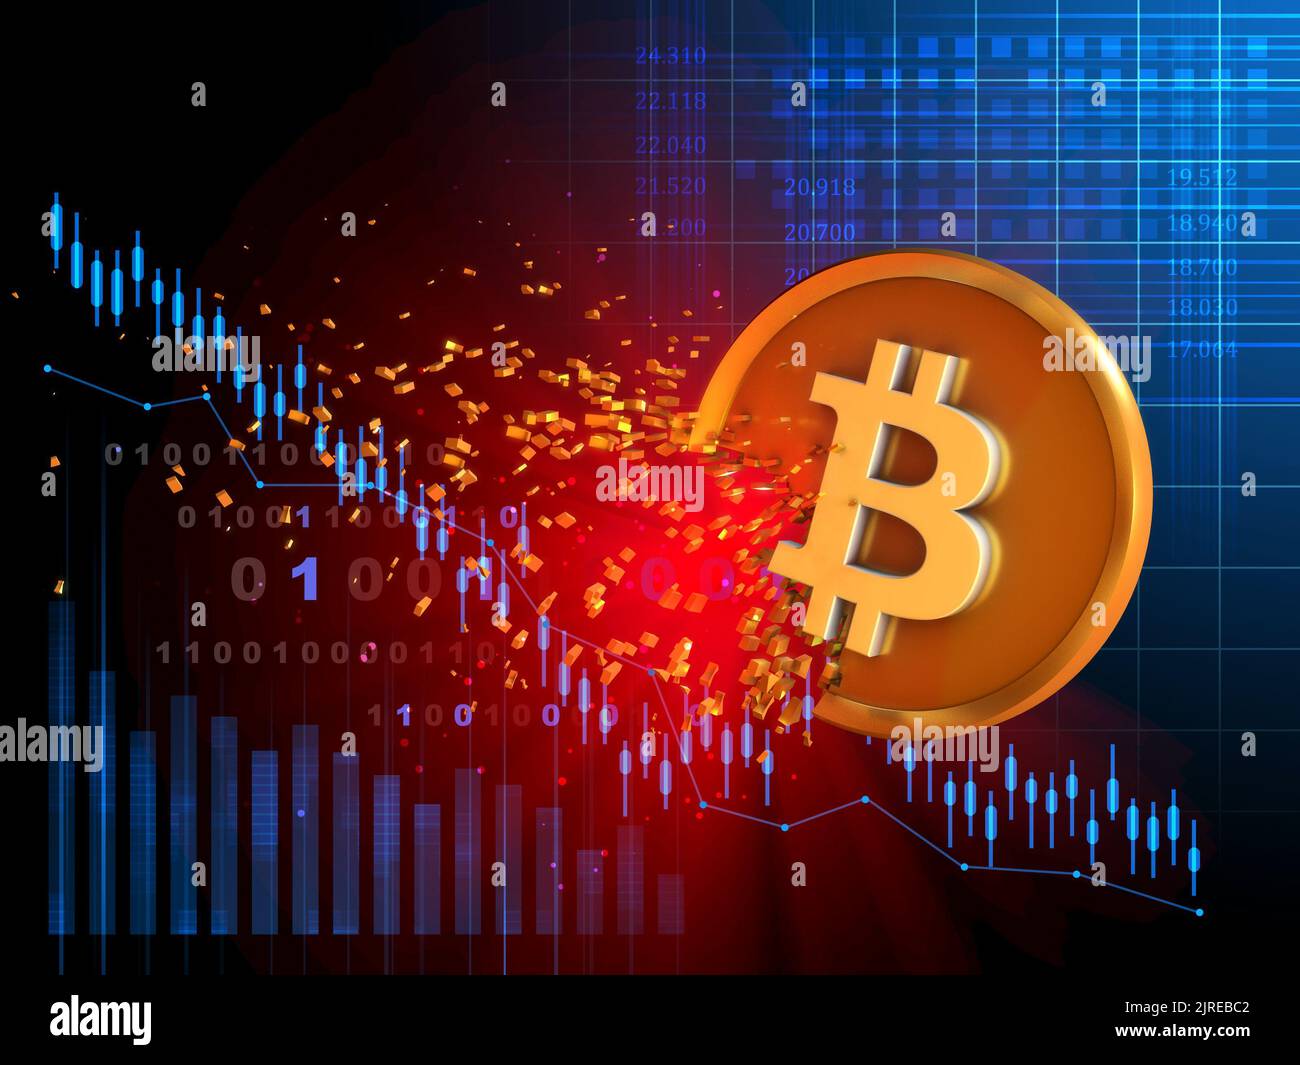 El bitcoin se desintegra a medida que cae su valor. Ilustración digital. Foto de stock